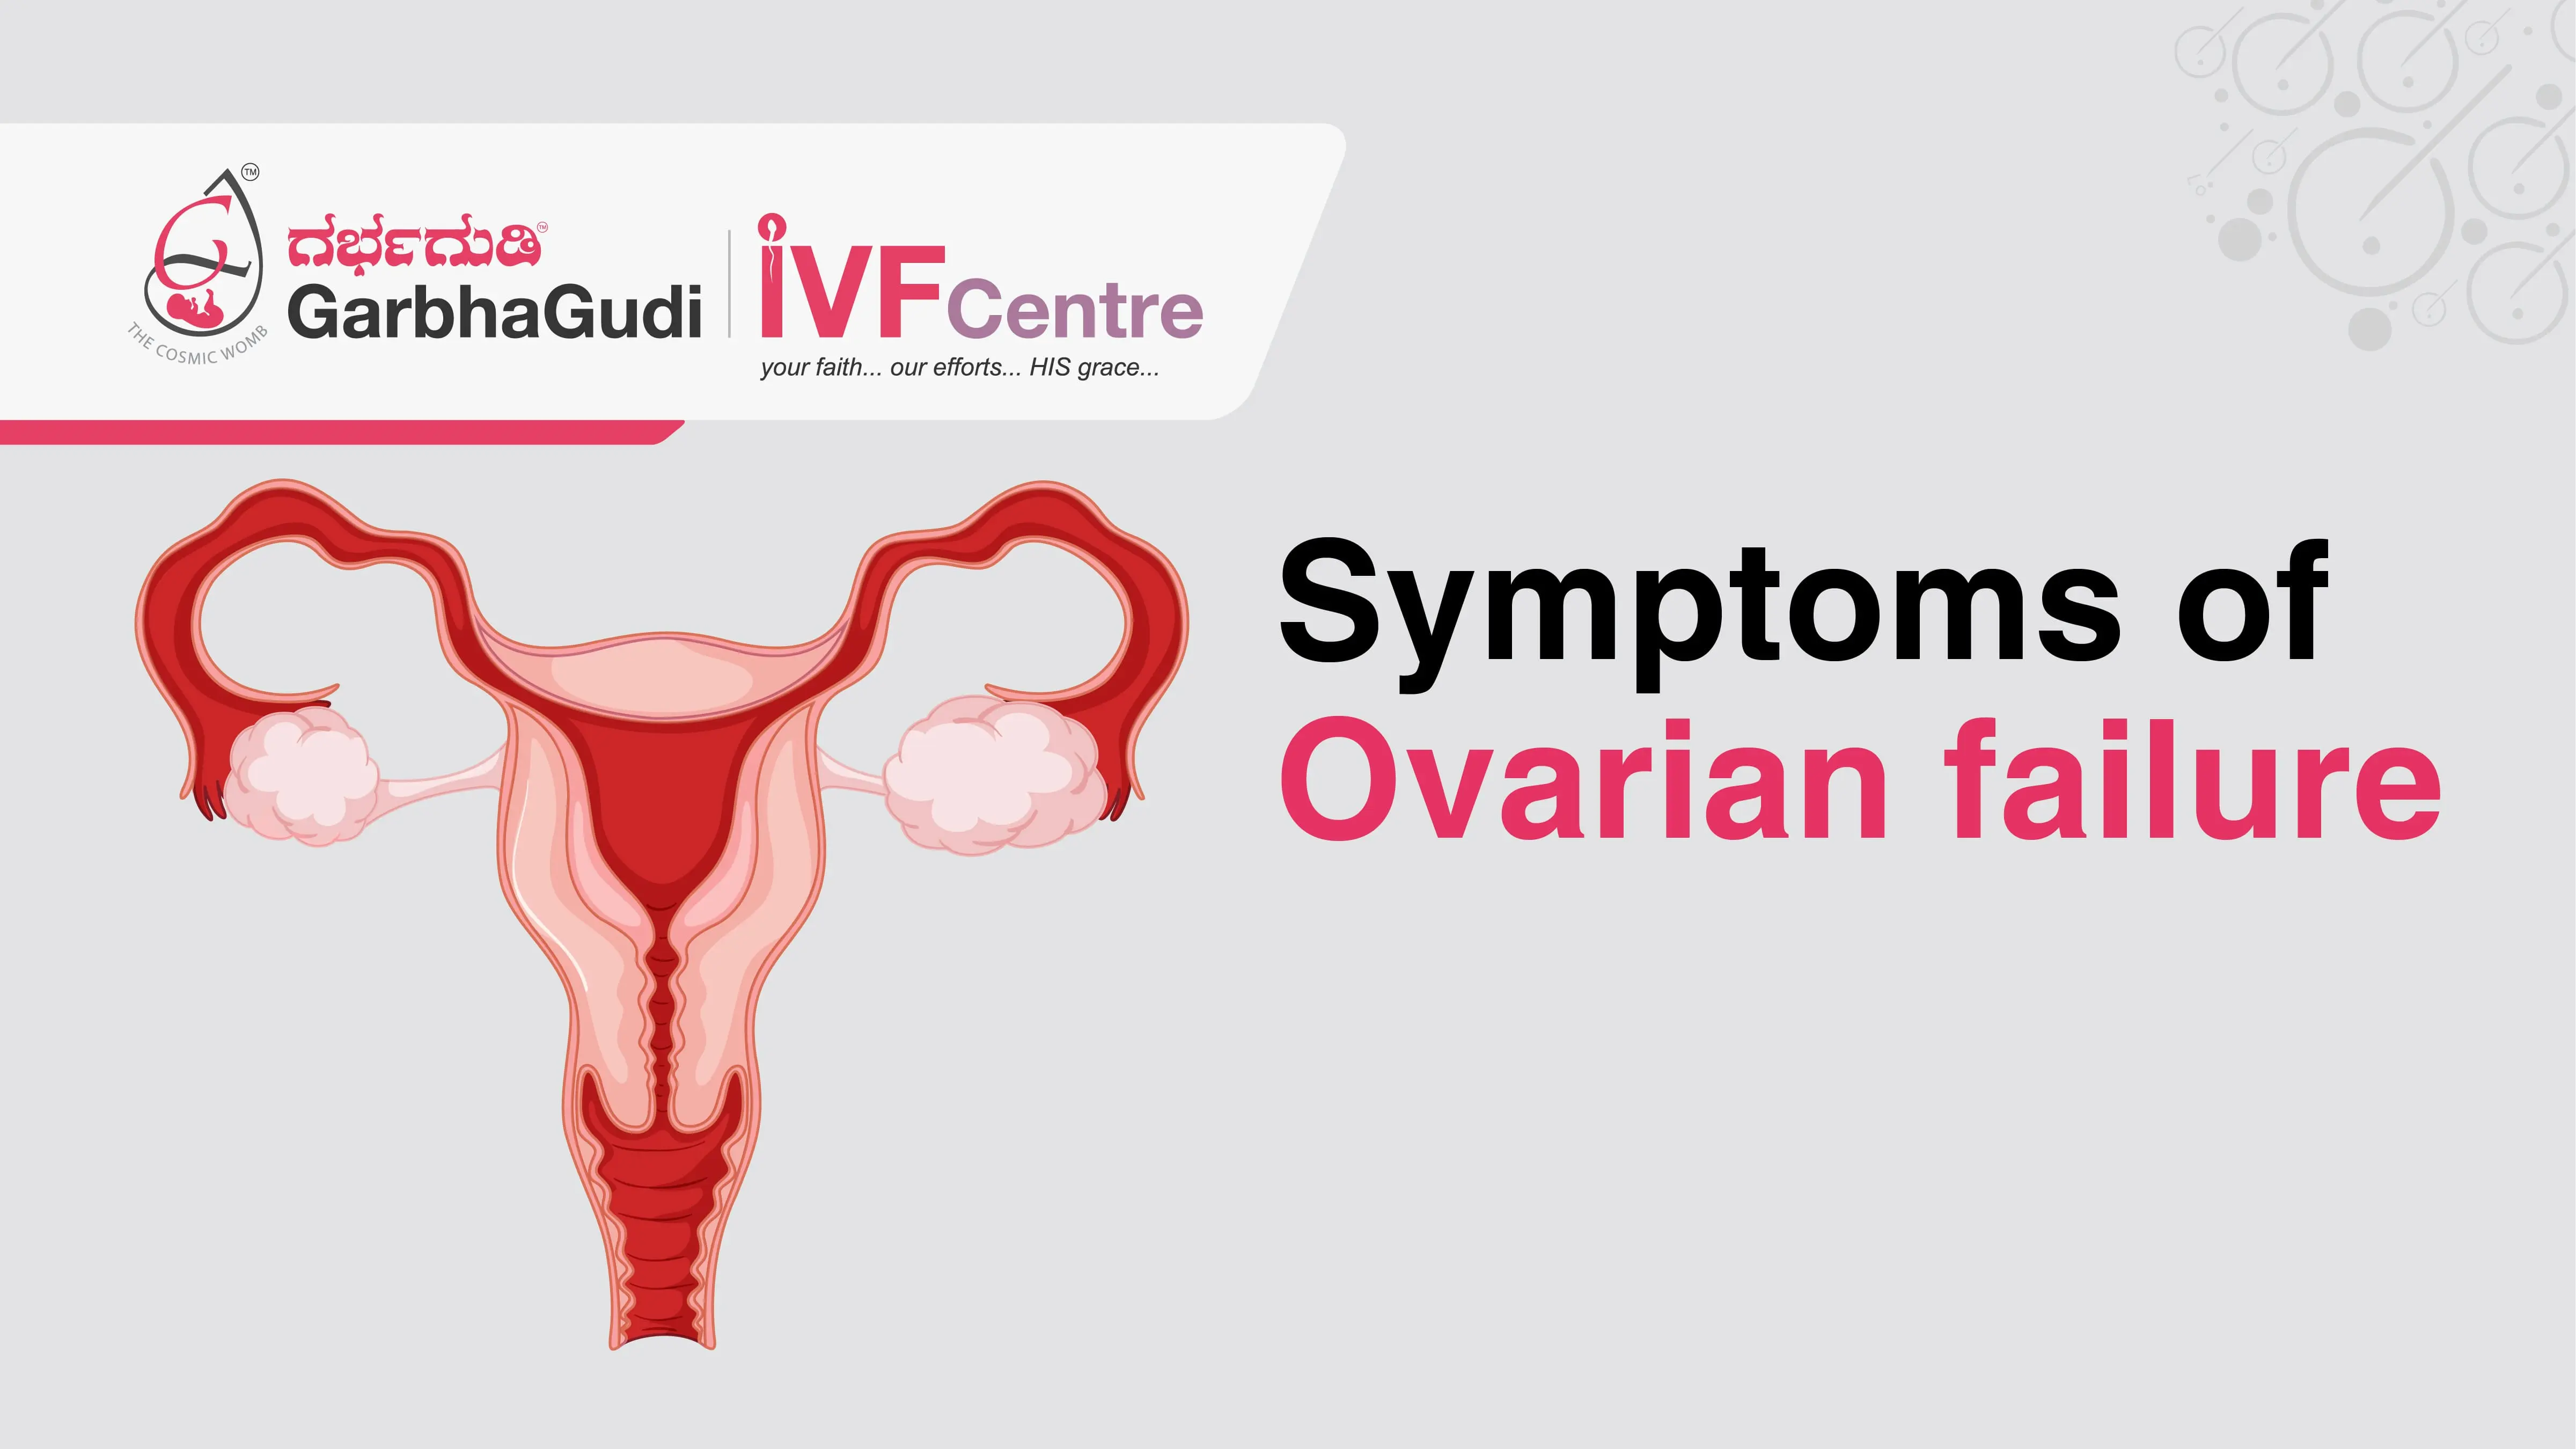 Symptoms of ovarian failure